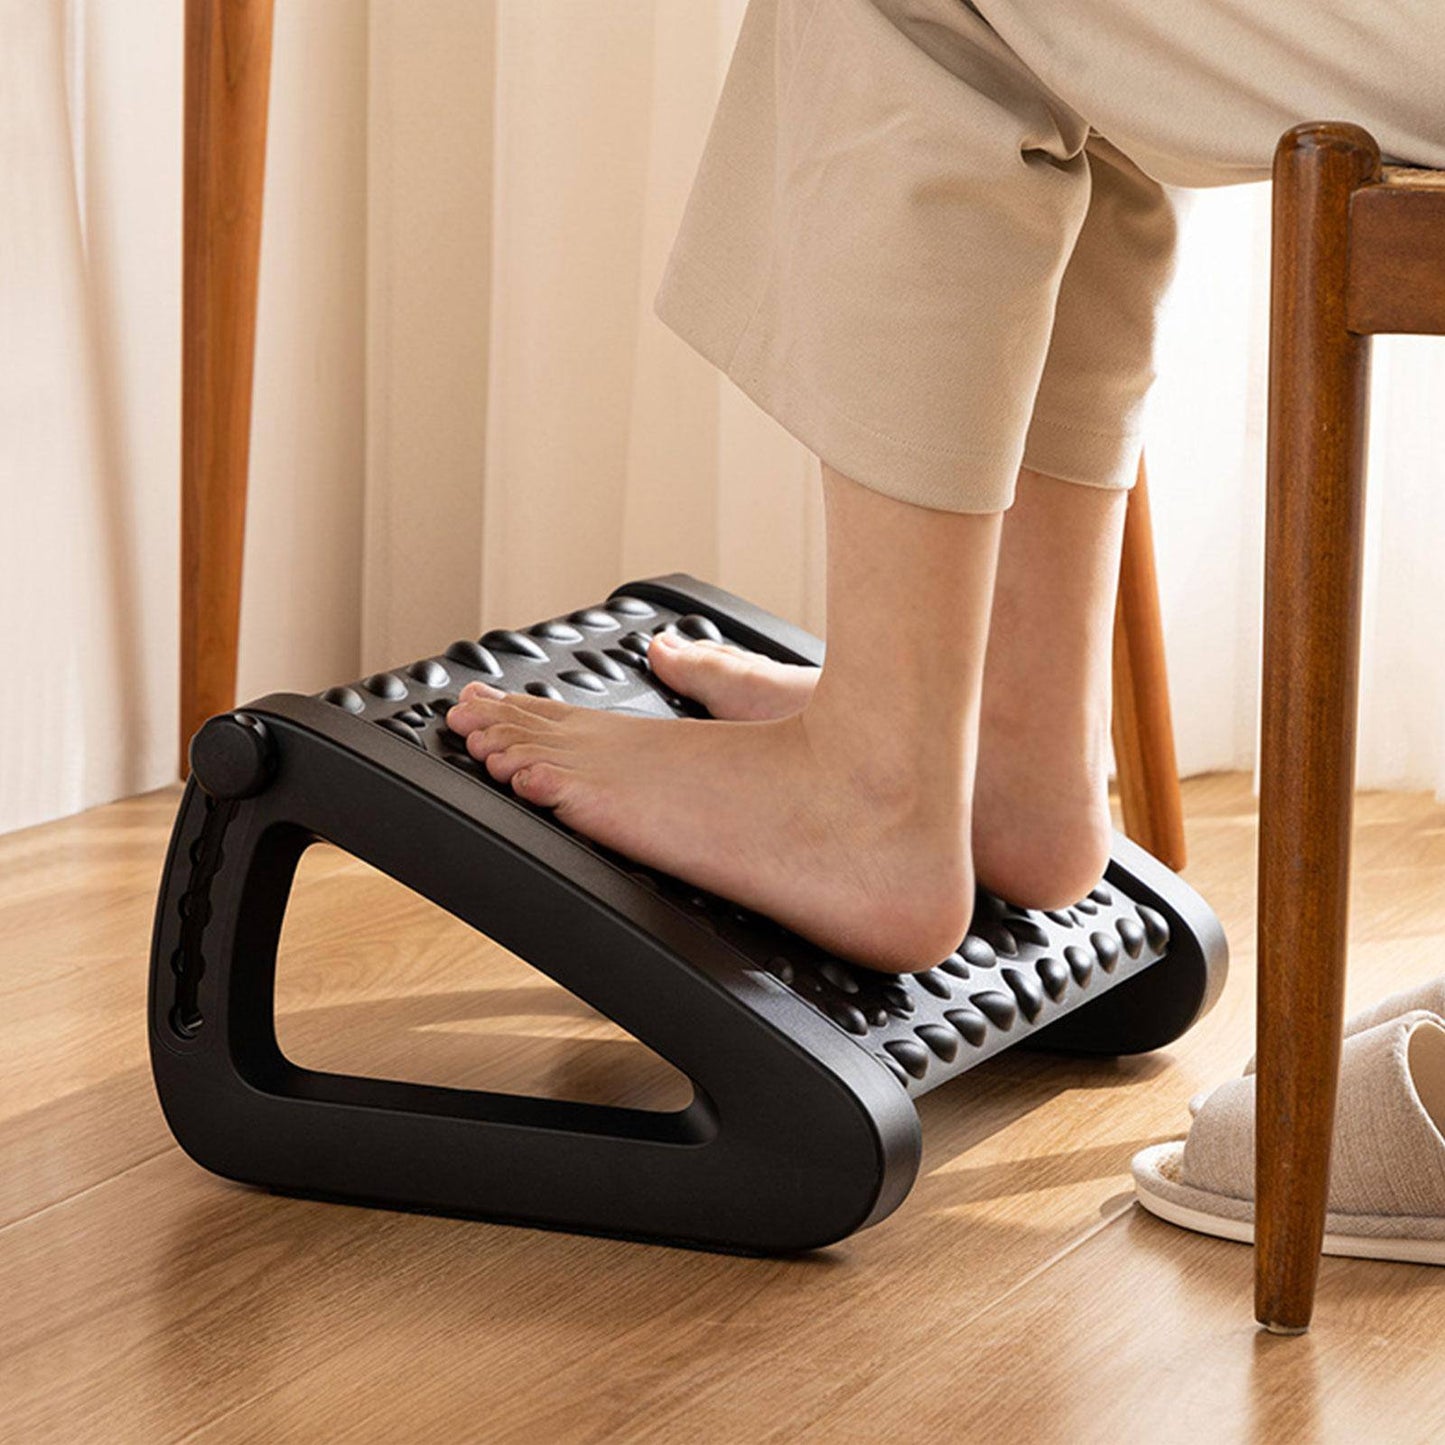 Repose pieds réglable et massant ( ) - Accessoires pour sièges de bureau digital noWmad - Matériel télétravail : Équipez-vous pour une expérience 2.0 ! Équipements et accessoires de bureau pour un télétravail confortable, efficace et flexible. Aménagez votre espace et gagnez en ergonomie. Casques, chaises, sous-mains, mouse jigglers... Exploitez tout le potentiel du travail à distance pour trouver votre équilibre, en voyage comme à la maison.